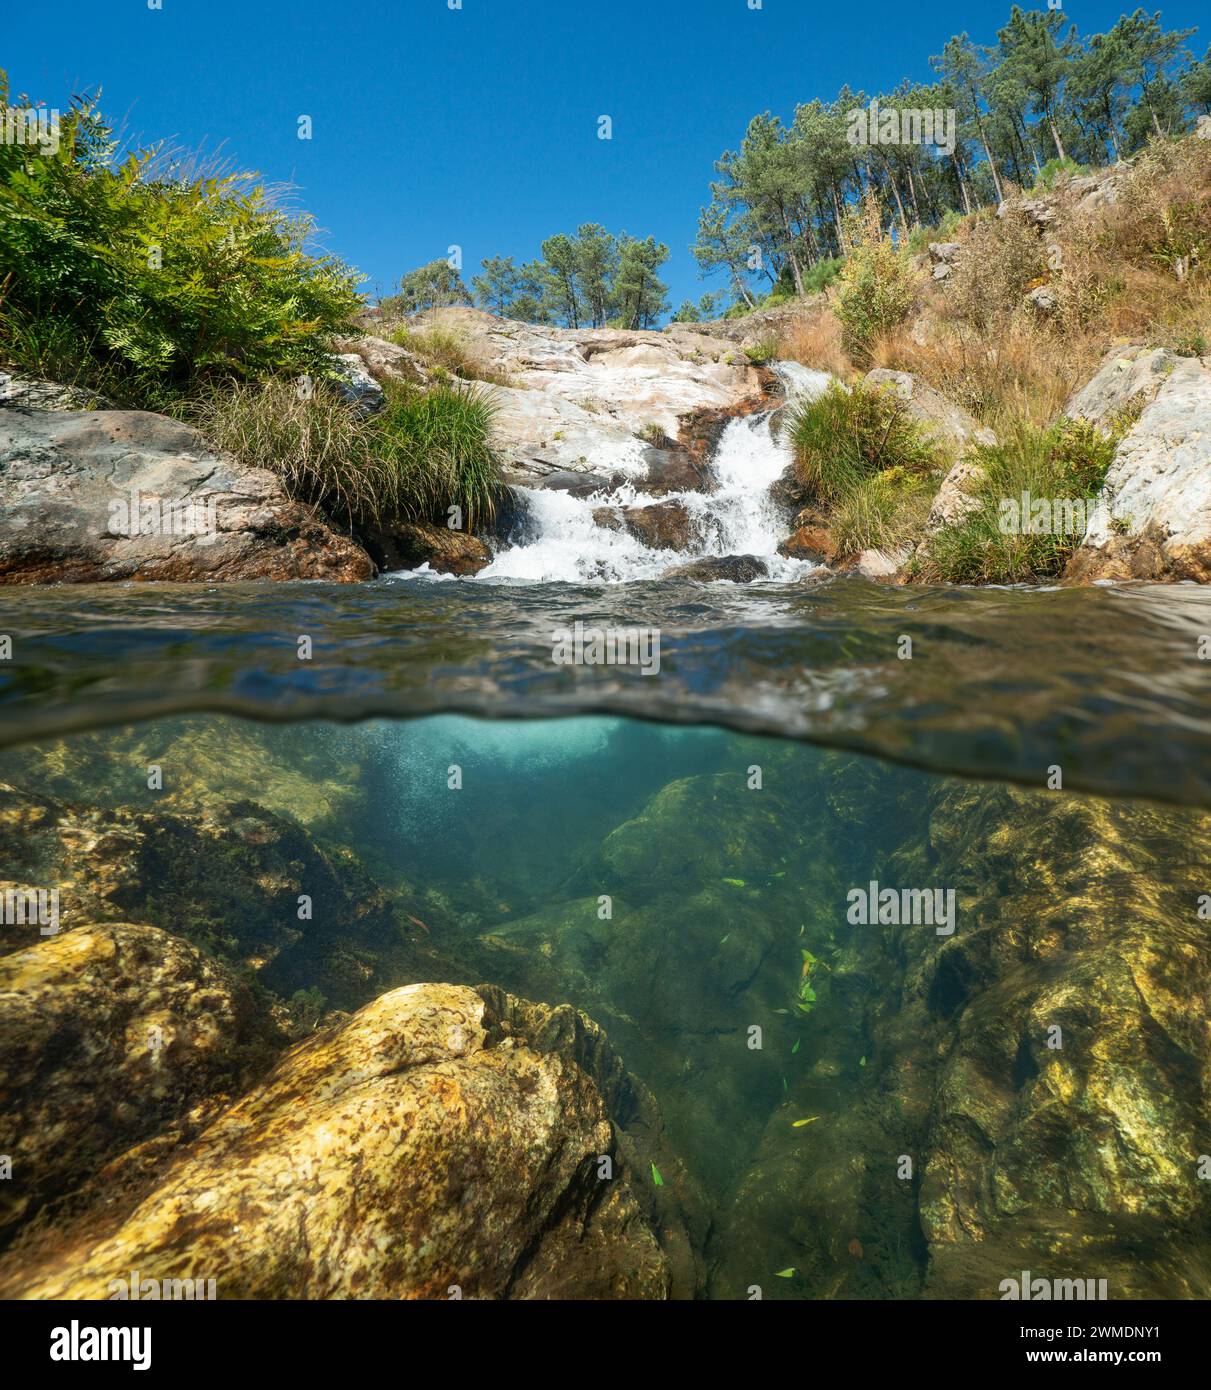 Kleine Kaskade in einem Fluss in Spanien, geteilter Blick zur Hälfte über und unter der Wasseroberfläche, natürliche Szene, Galicien, Provinz Pontevedra Stockfoto